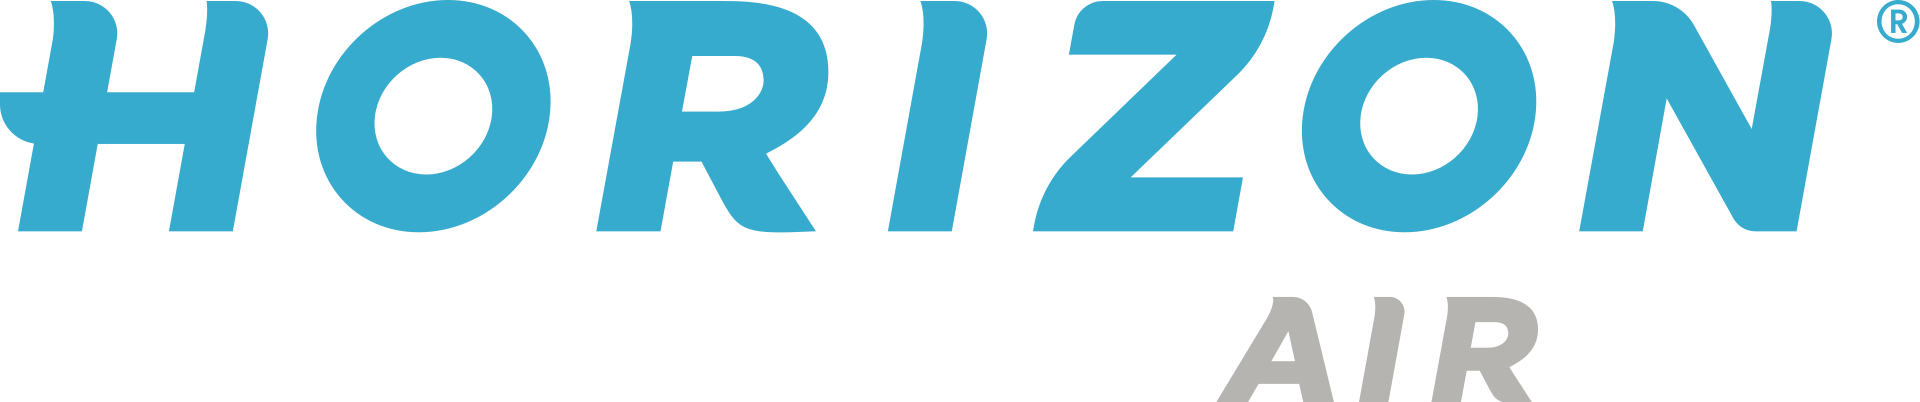 Horizon Air Industries, Inc. logo